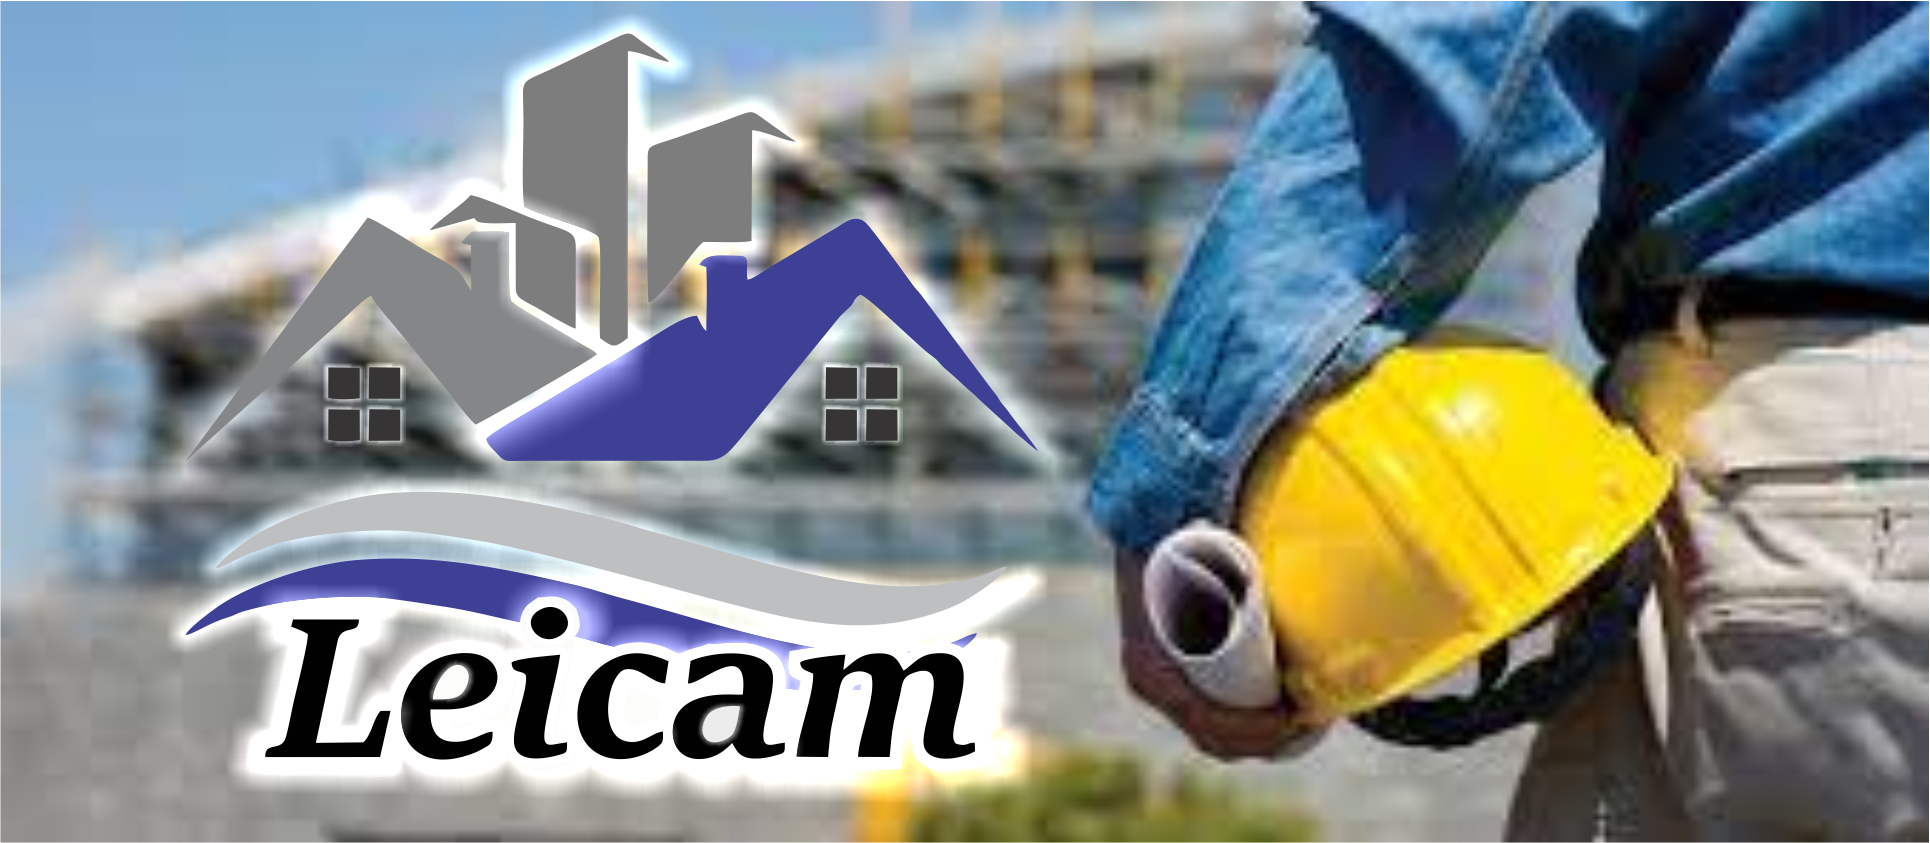 Leicam Reforma Construção de Casas Prontas      Fones: (41) 99635-4288 /